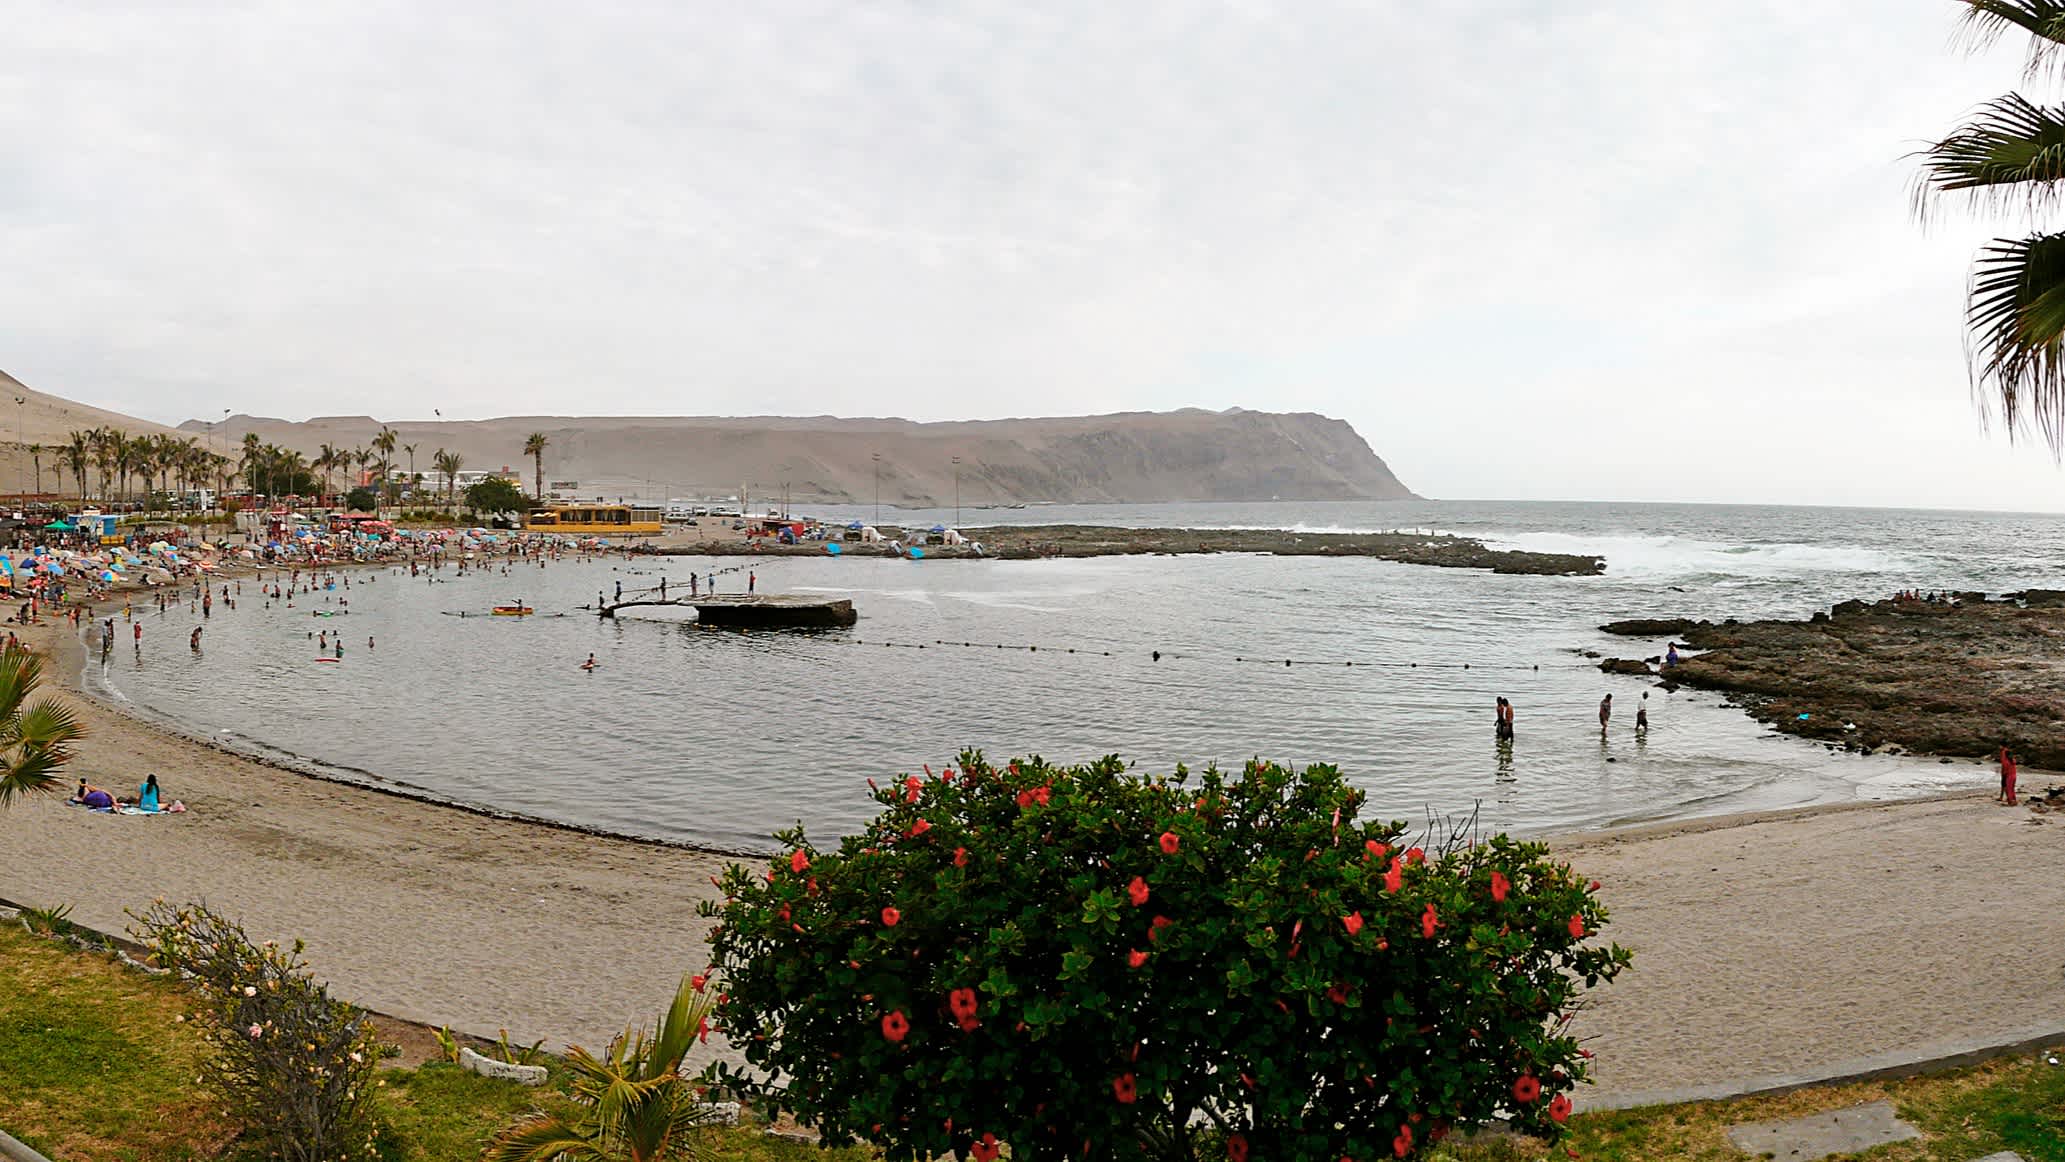 Der Strand von La Lisera nahe Arica in Chile mit Menschen am Strand und einem Busch im Vordergrund sowie einem Weitblick über die Bucht im Hintergrund.